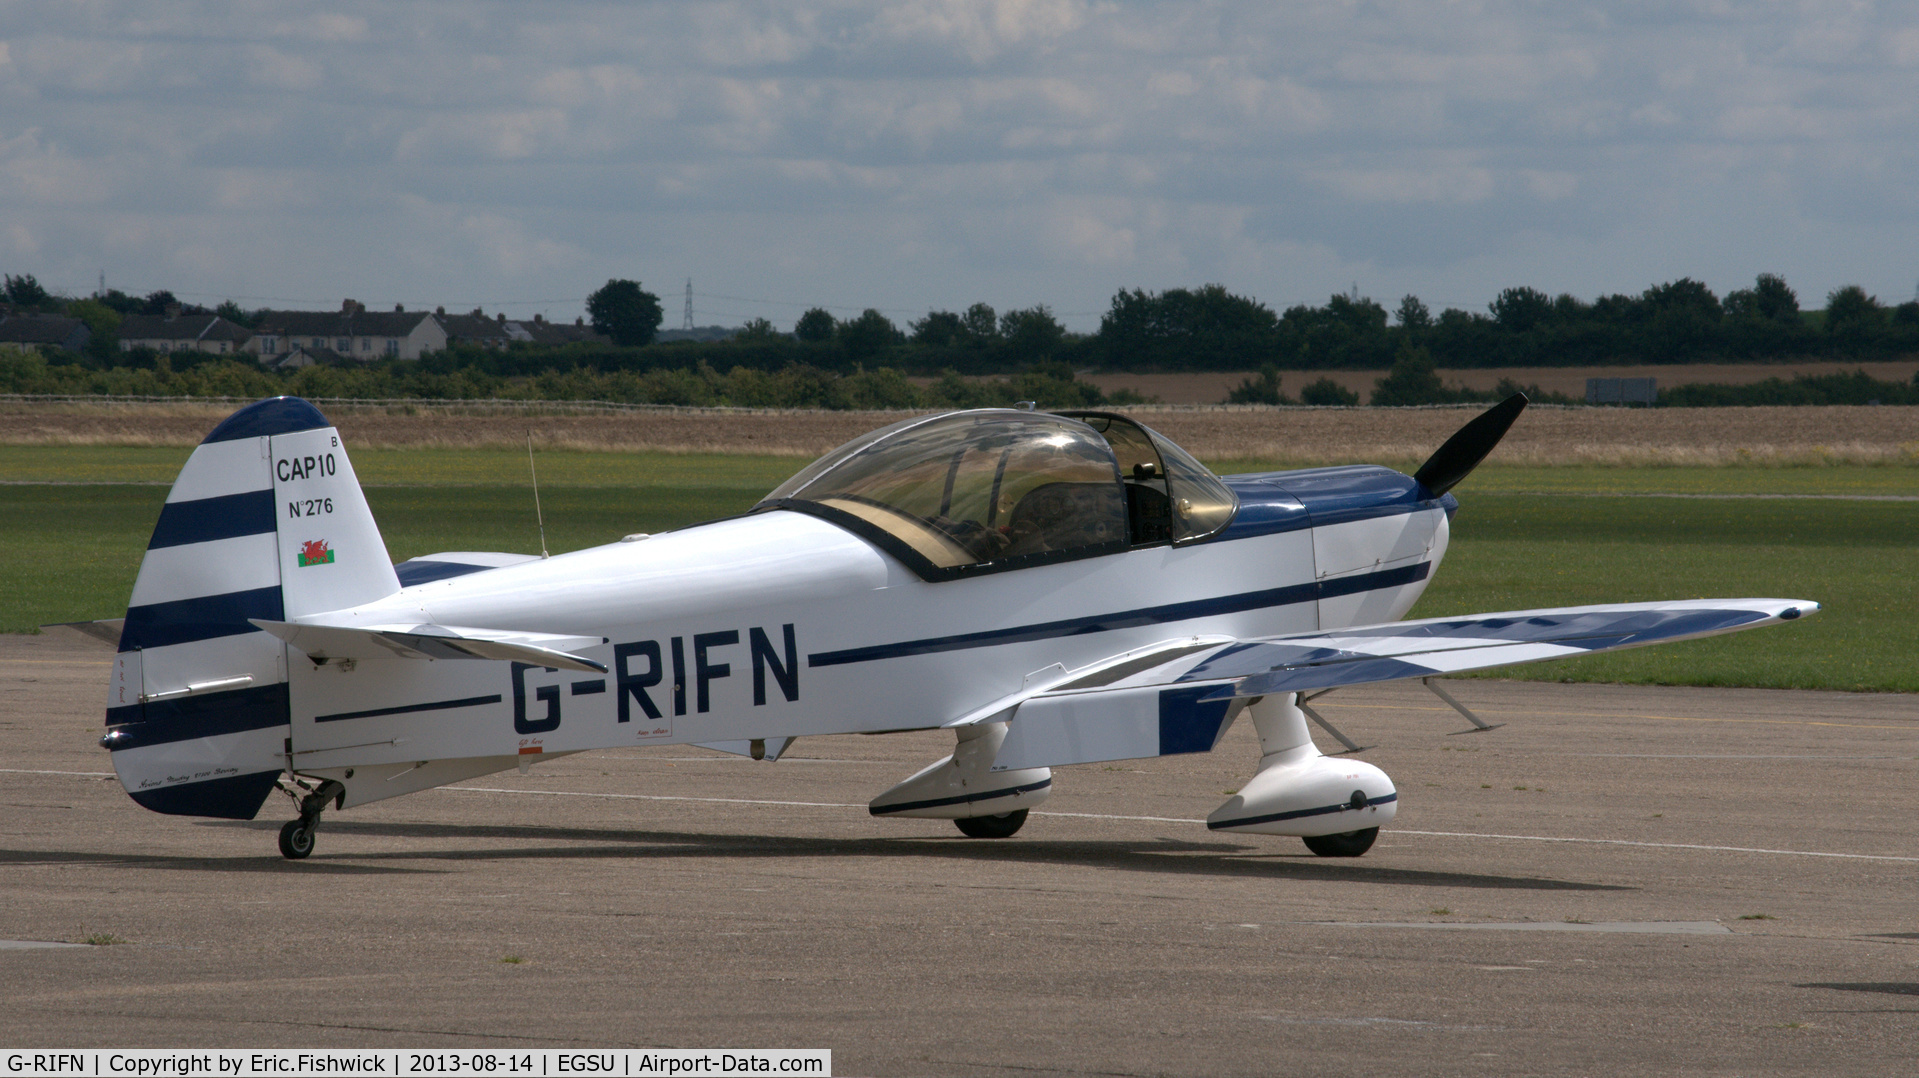 G-RIFN, 1995 Mudry CAP-10B C/N 276, 2. G-RIFN visiting Duxford Airfield.